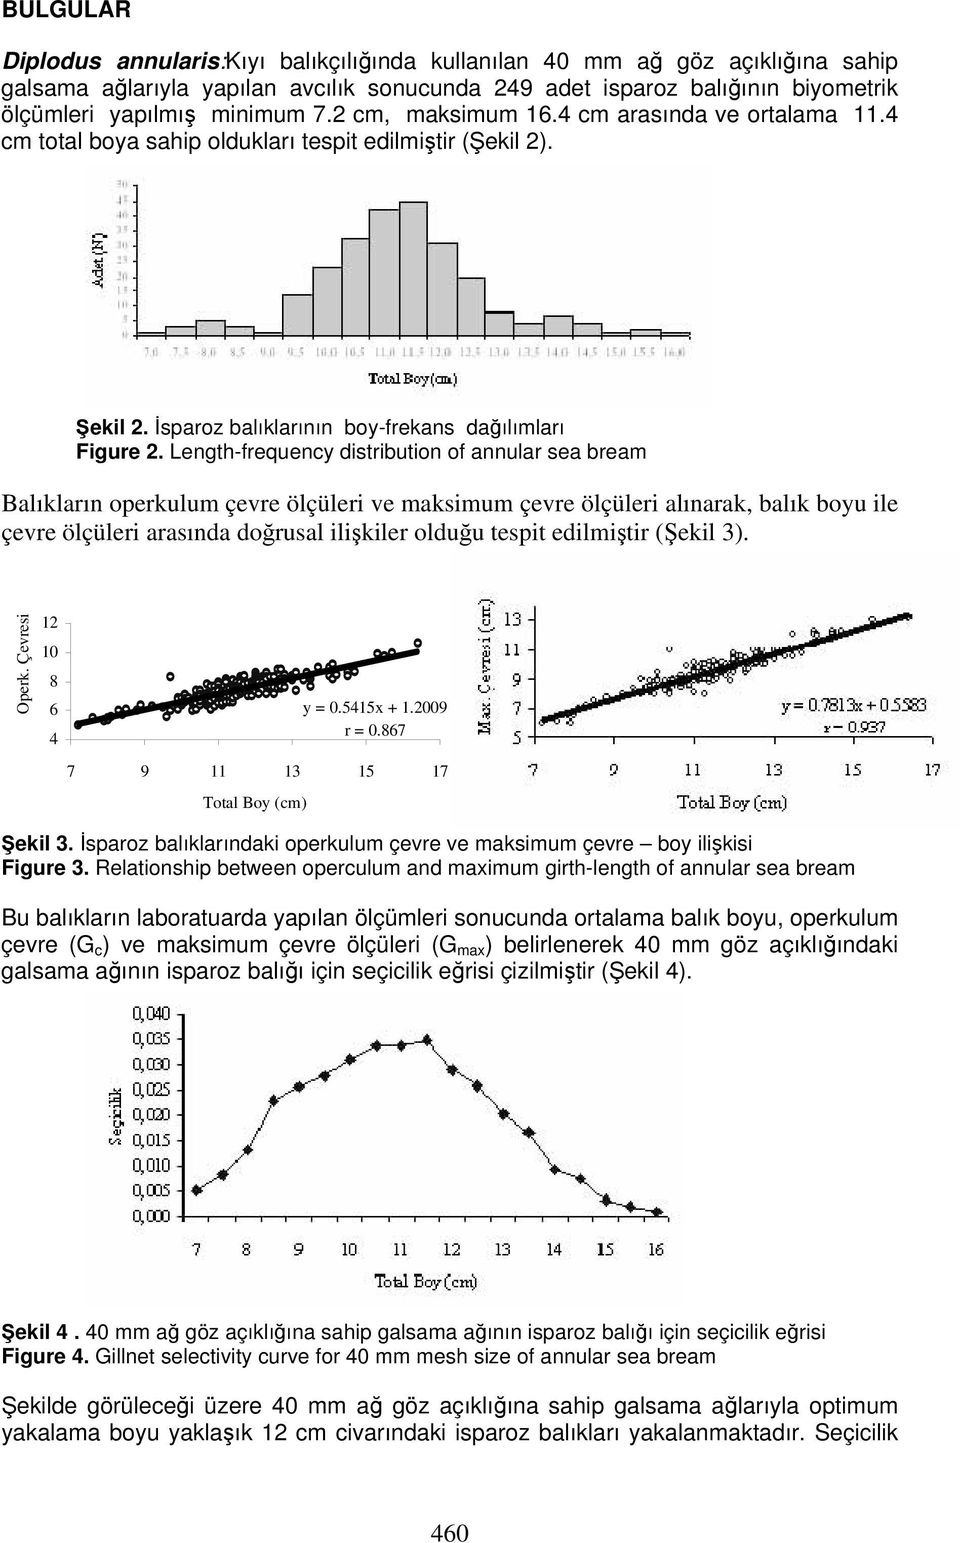 Length-frequency distribution of annular sea bream Balıkların operkulum çevre ölçüleri ve maksimum çevre ölçüleri alınarak, balık boyu ile çevre ölçüleri arasında doğrusal ilişkiler olduğu tespit